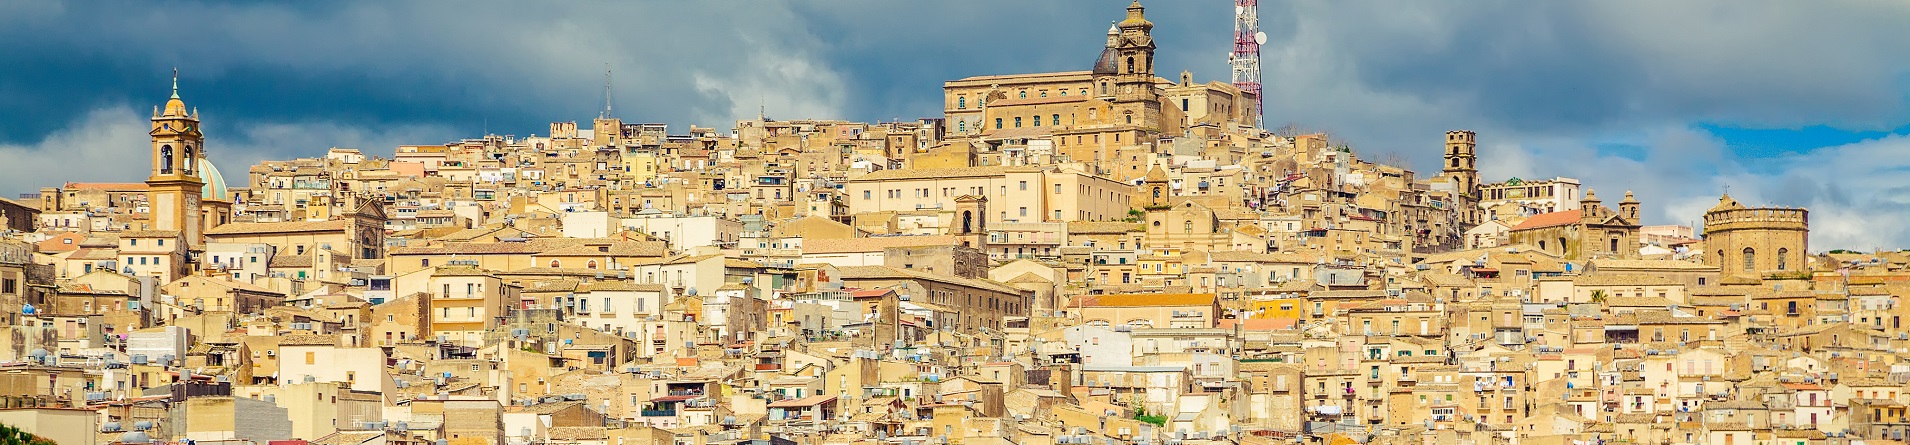 Ville e case vacanze in Sicilia vicino Caltagirone